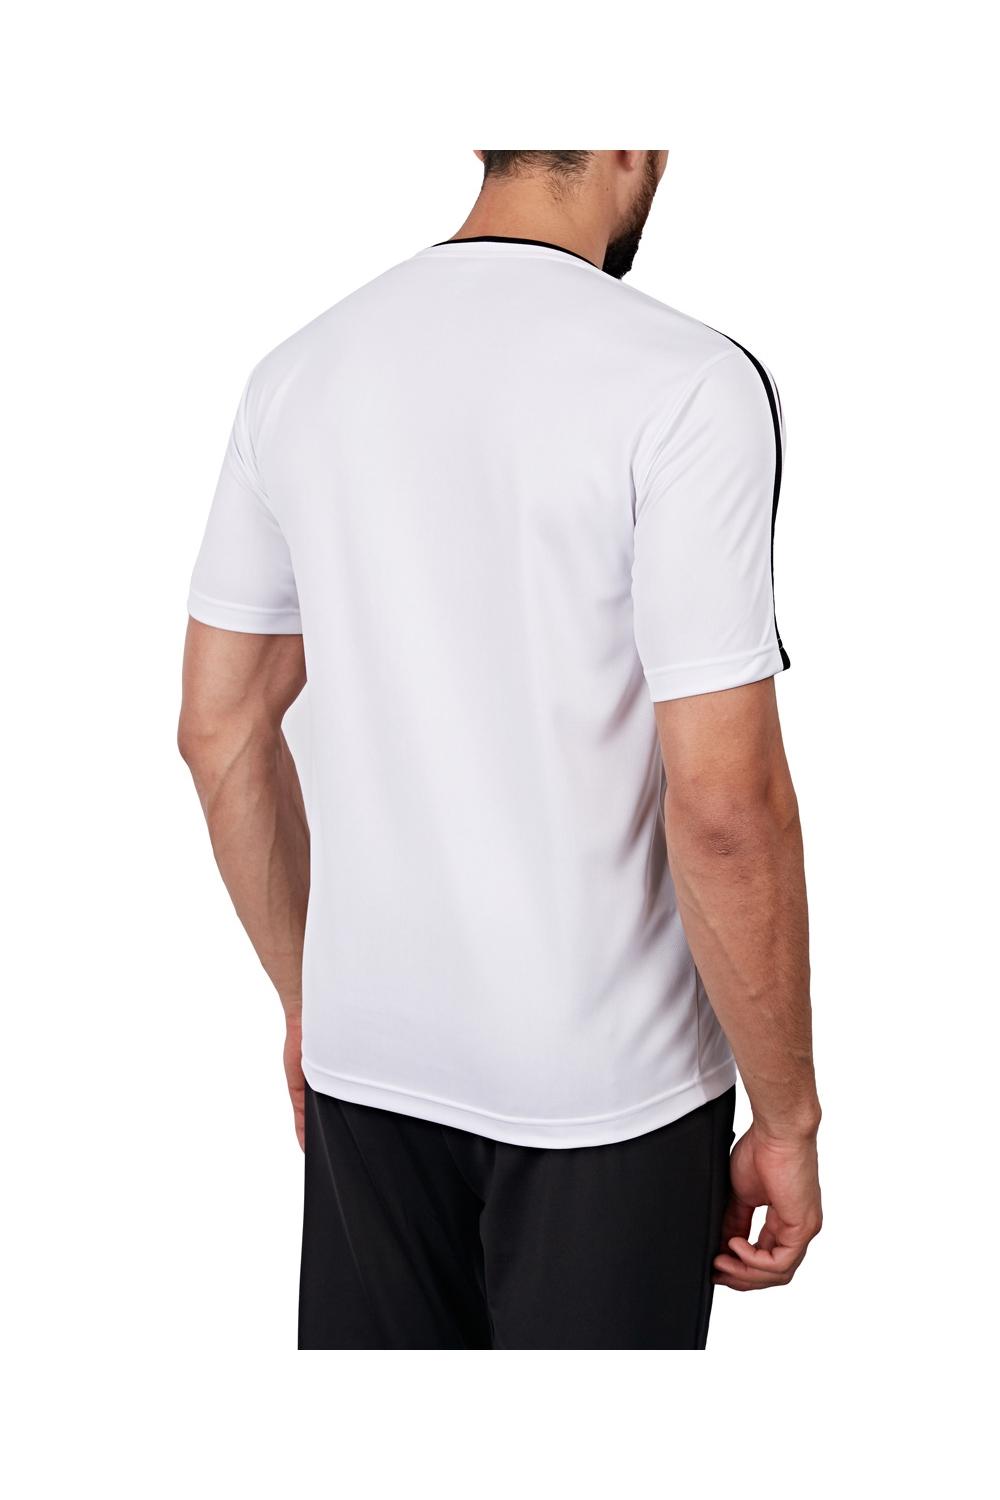 تی شرت ورزشی سفید مردانه لسکن